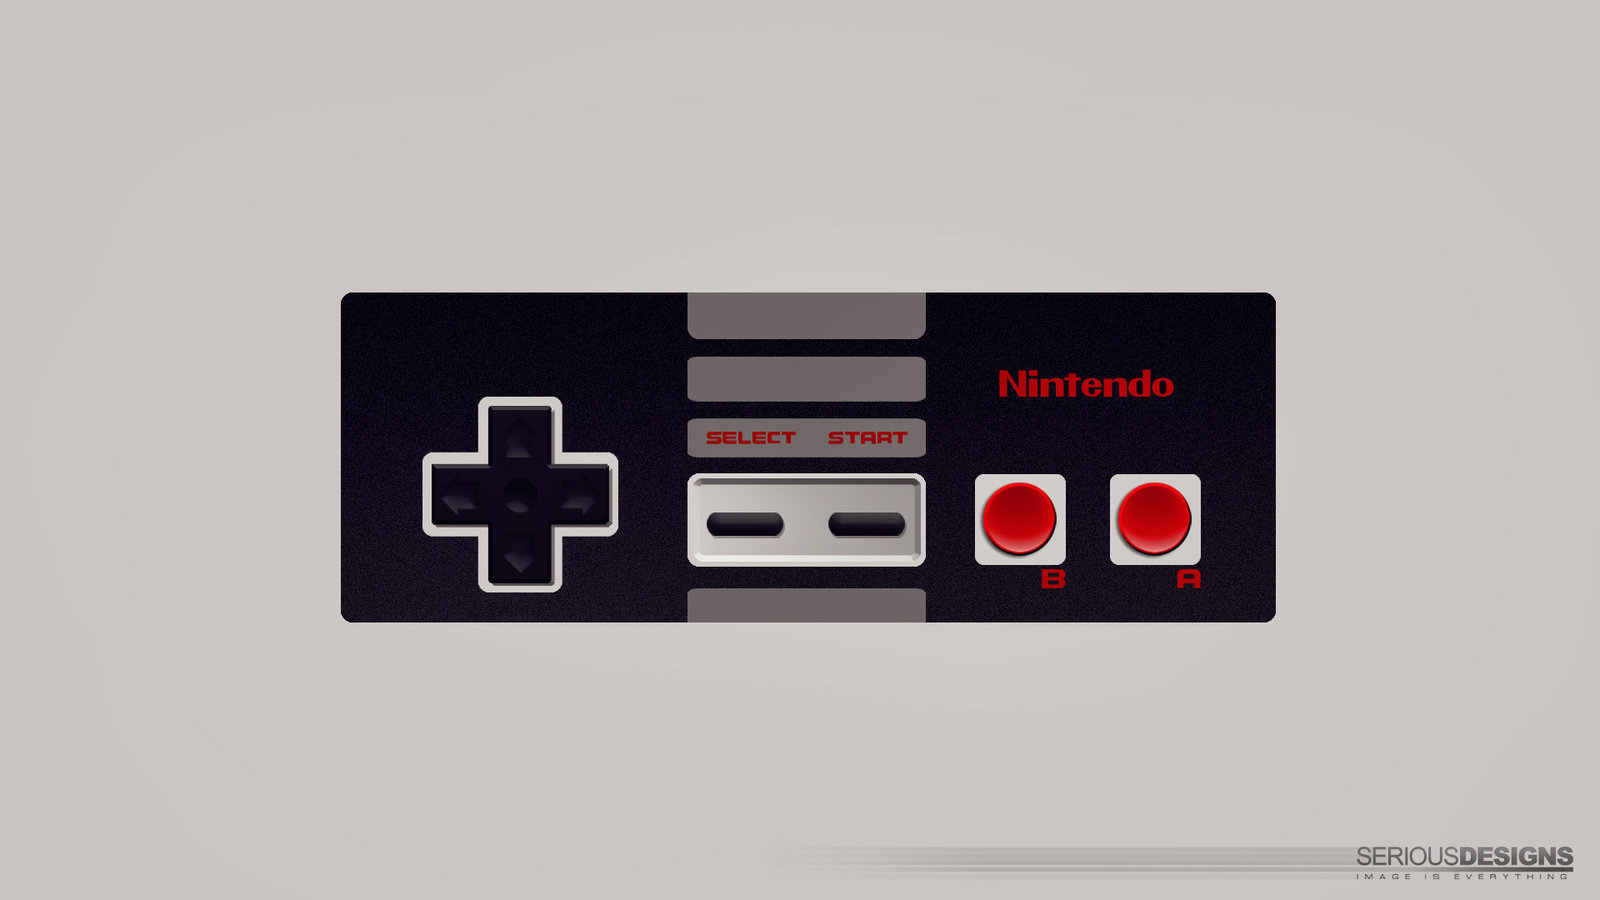 Nintendo Retro Controller Wallpaper 1080p By Seriousdesigns On